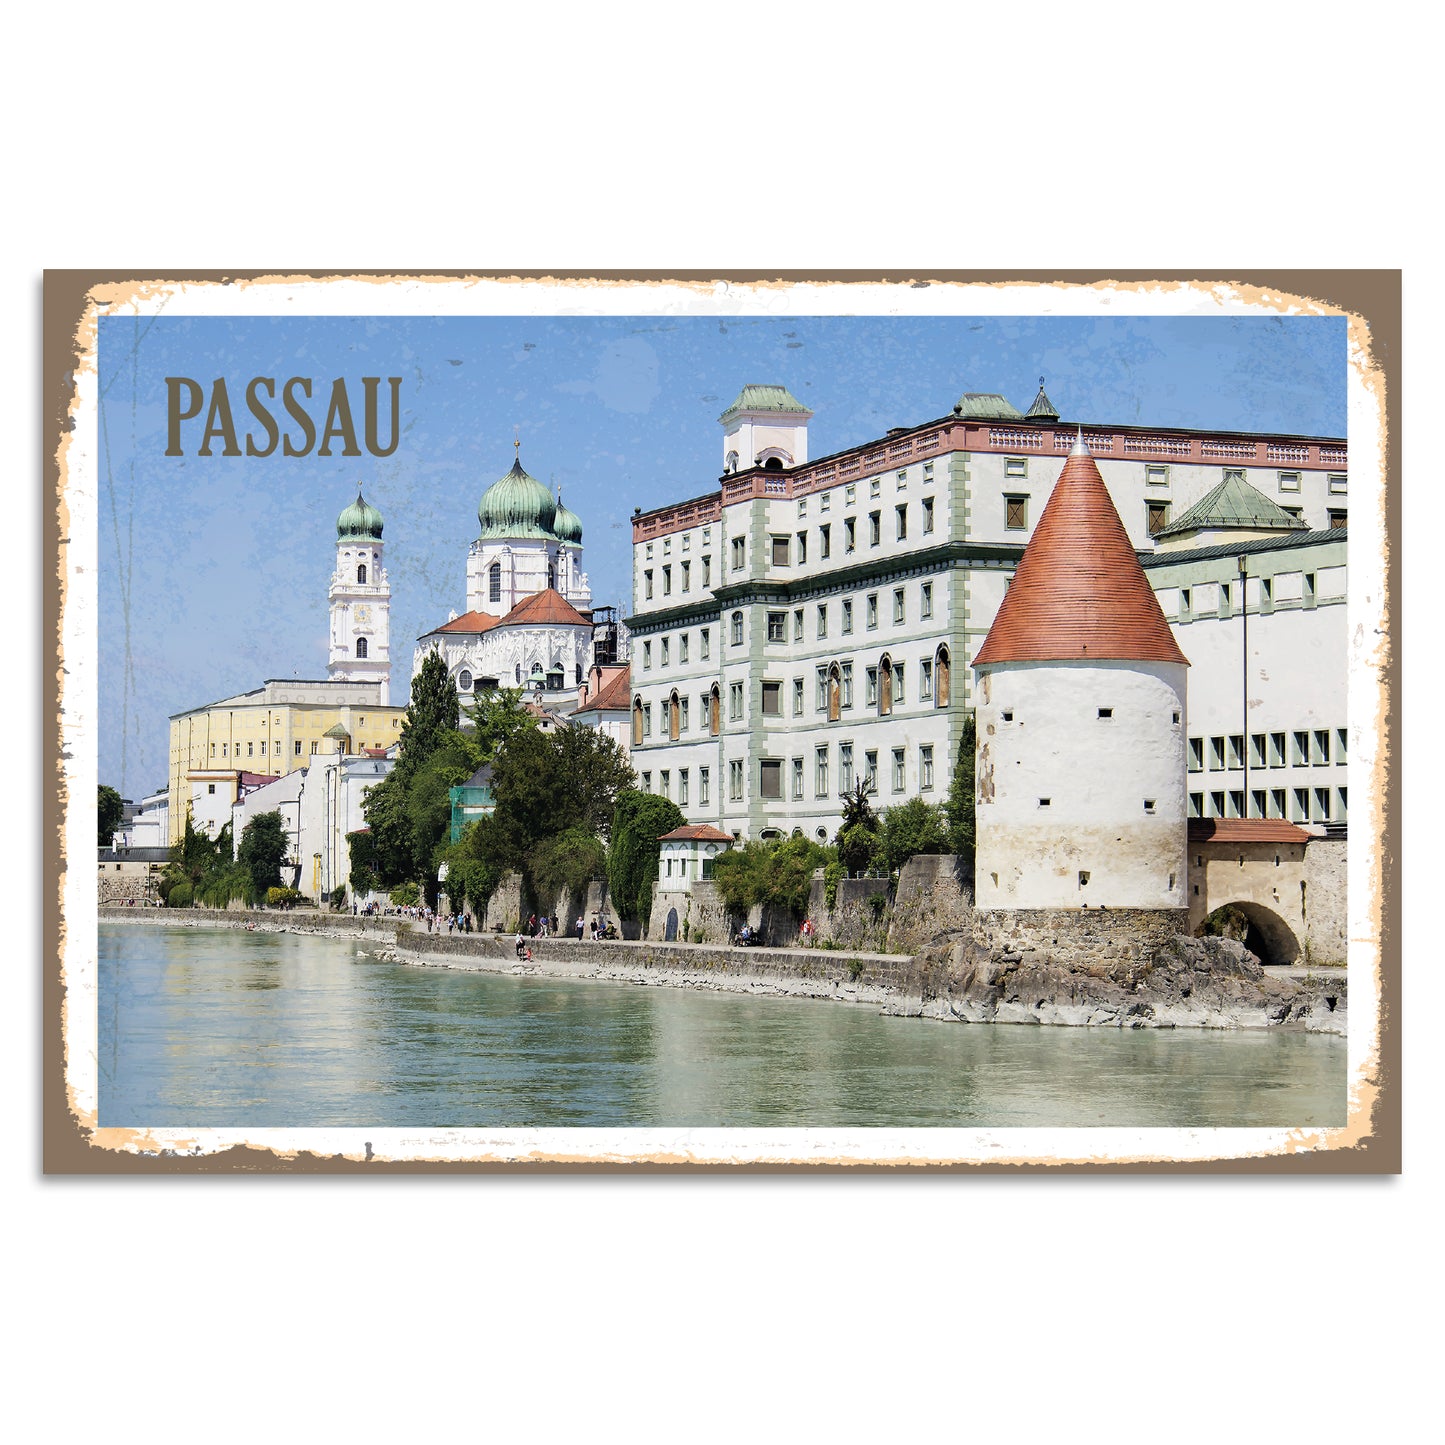 Blechschild - Passau